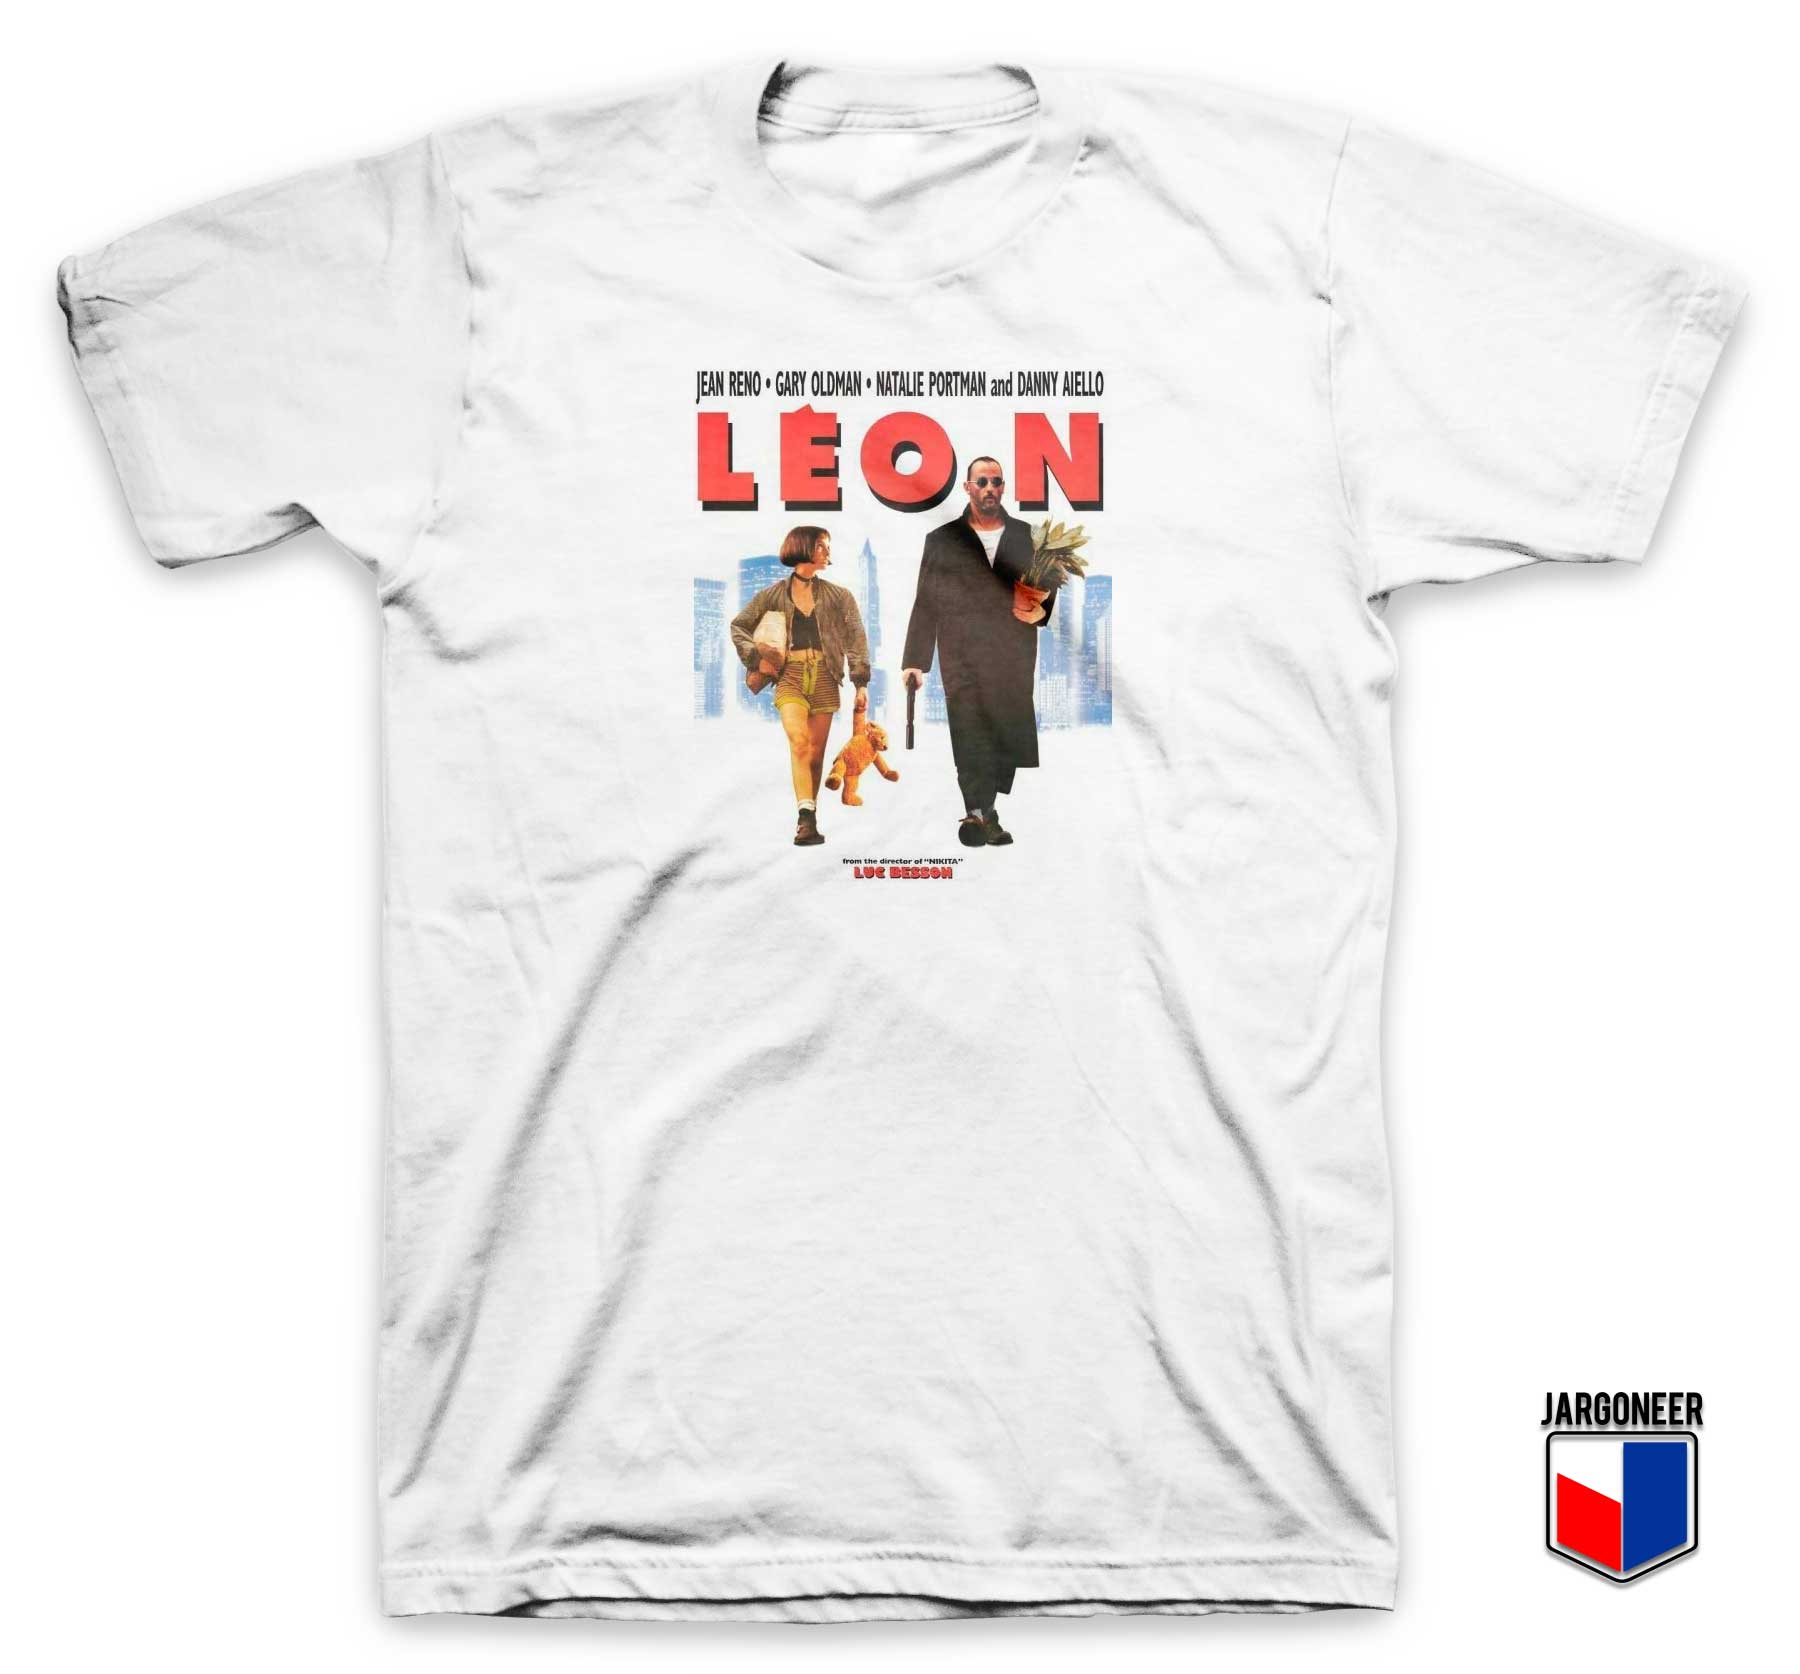 Leon The Professional Vintage T Shirt - Shop Unique Graphic Cool Shirt Designs